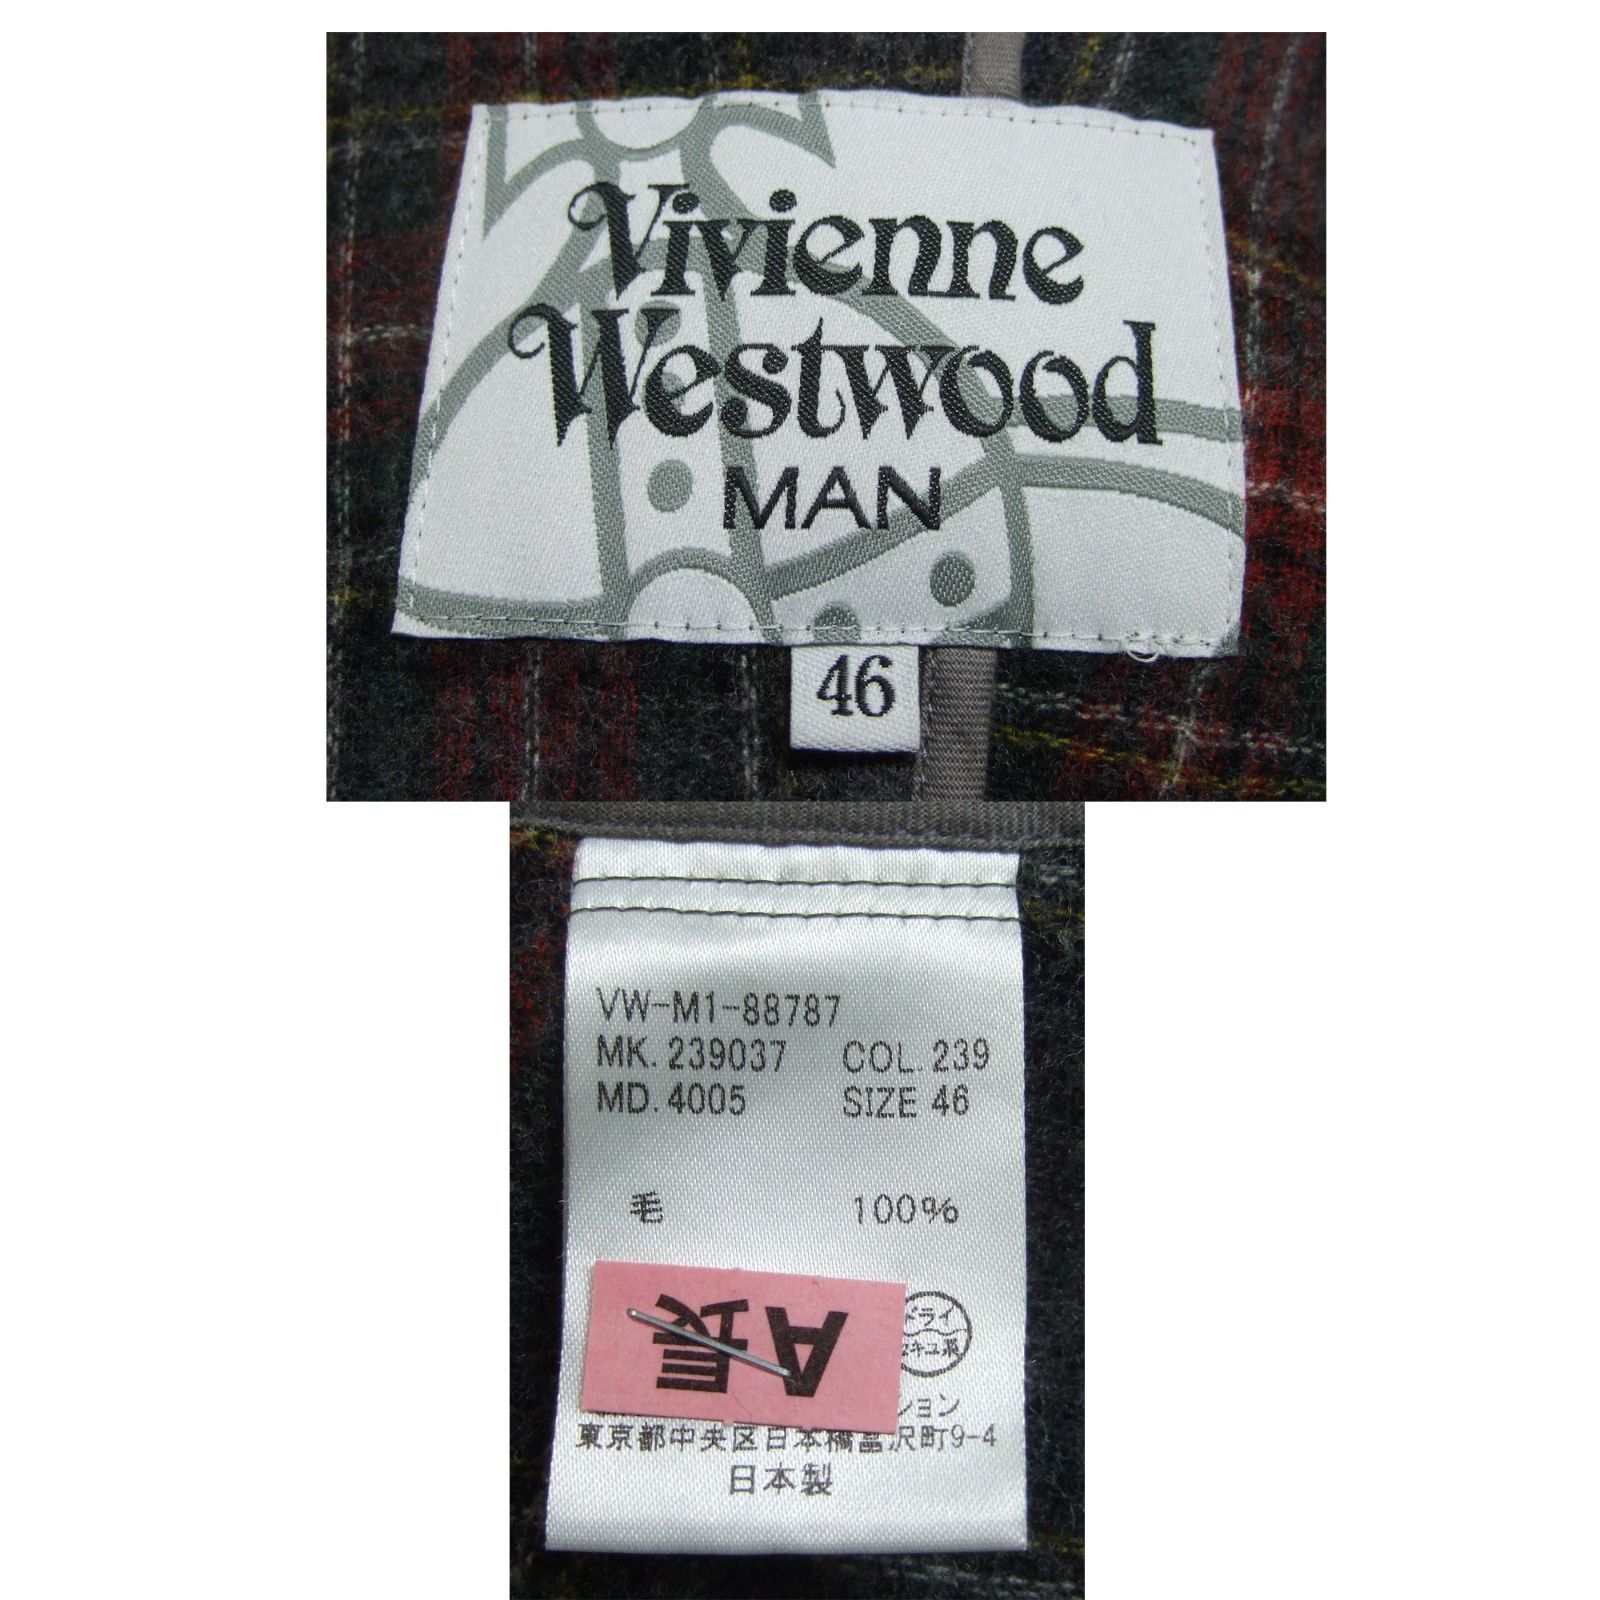 Vivienne Westwood MAN ヘリンボーン×チェック 変形 ロングコート